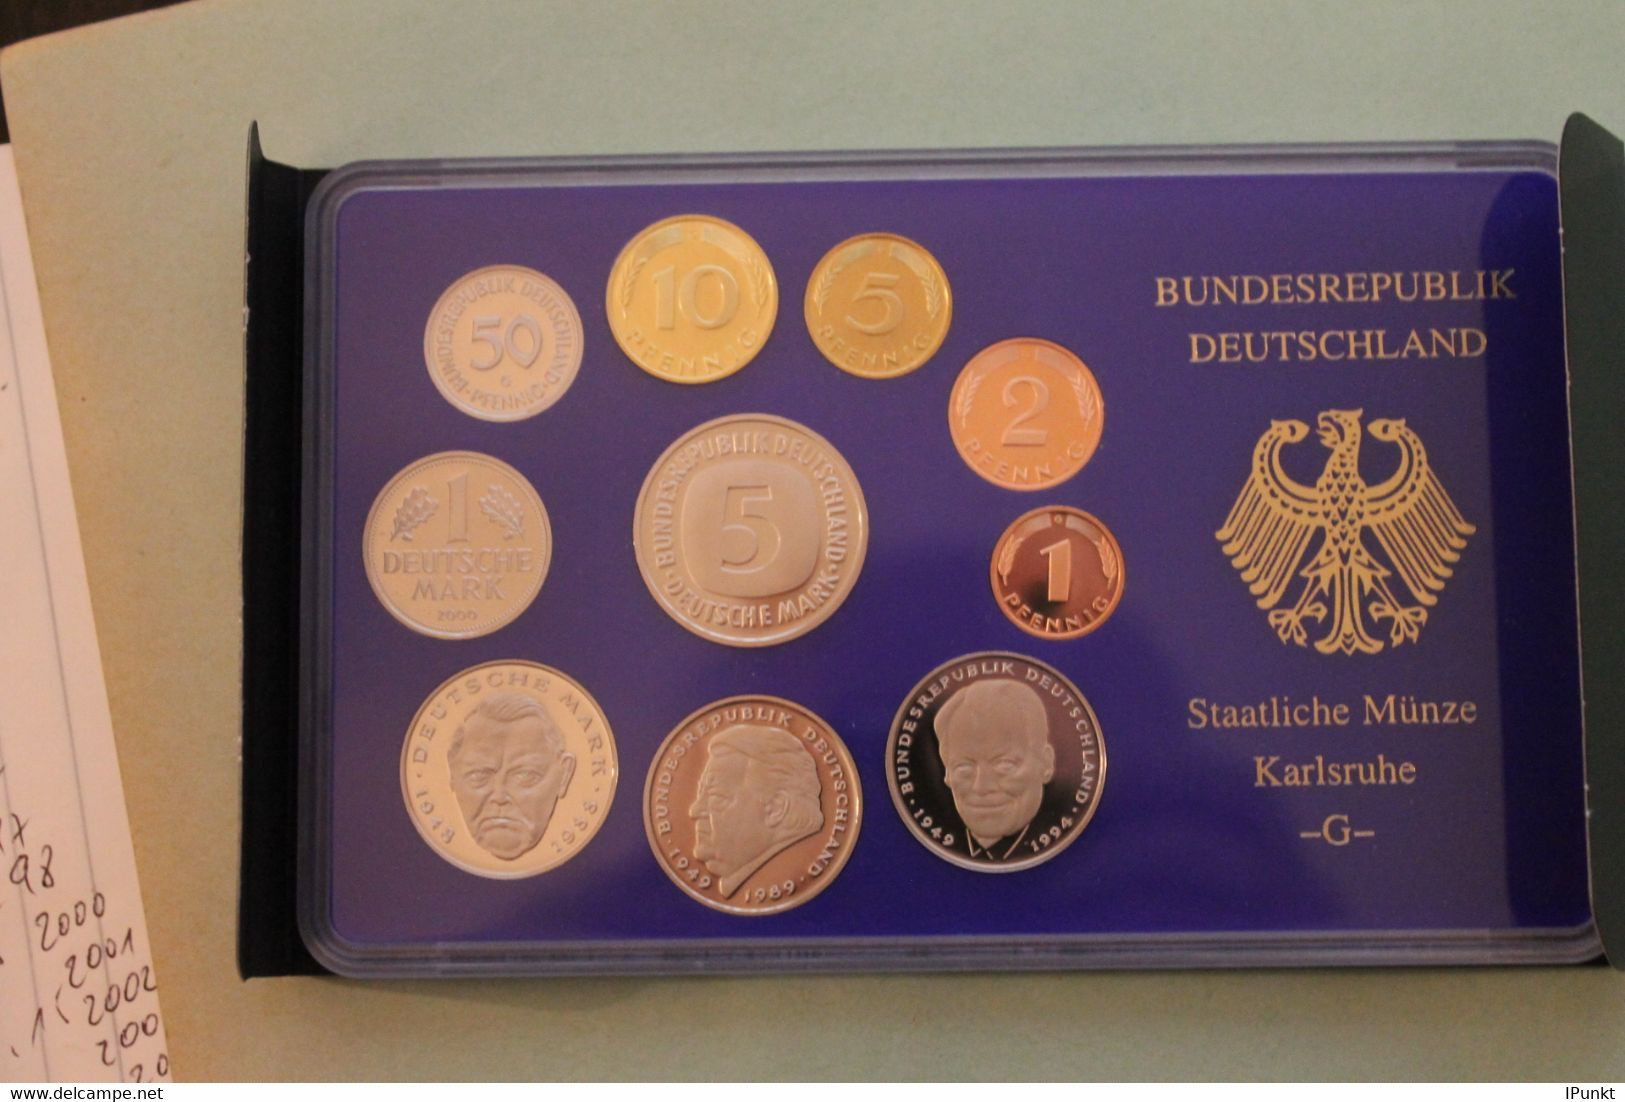 Deutschland, Kursmünzensatz; Umlaufmünzenserie 2000 G, Spiegelglanz (PP) - Sets De Acuñados &  Sets De Pruebas